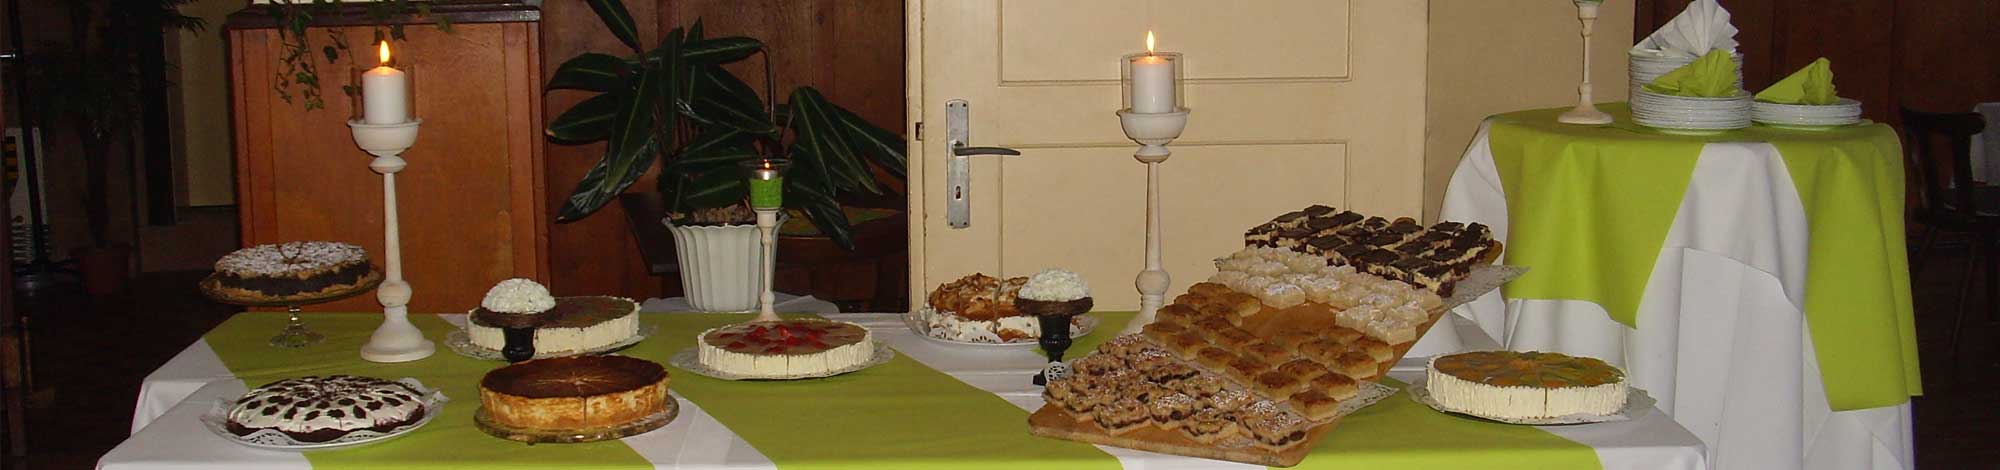 Ein Kuchenbuffet mit freundlichen Grüßen vom Ratskeller in Kemberg